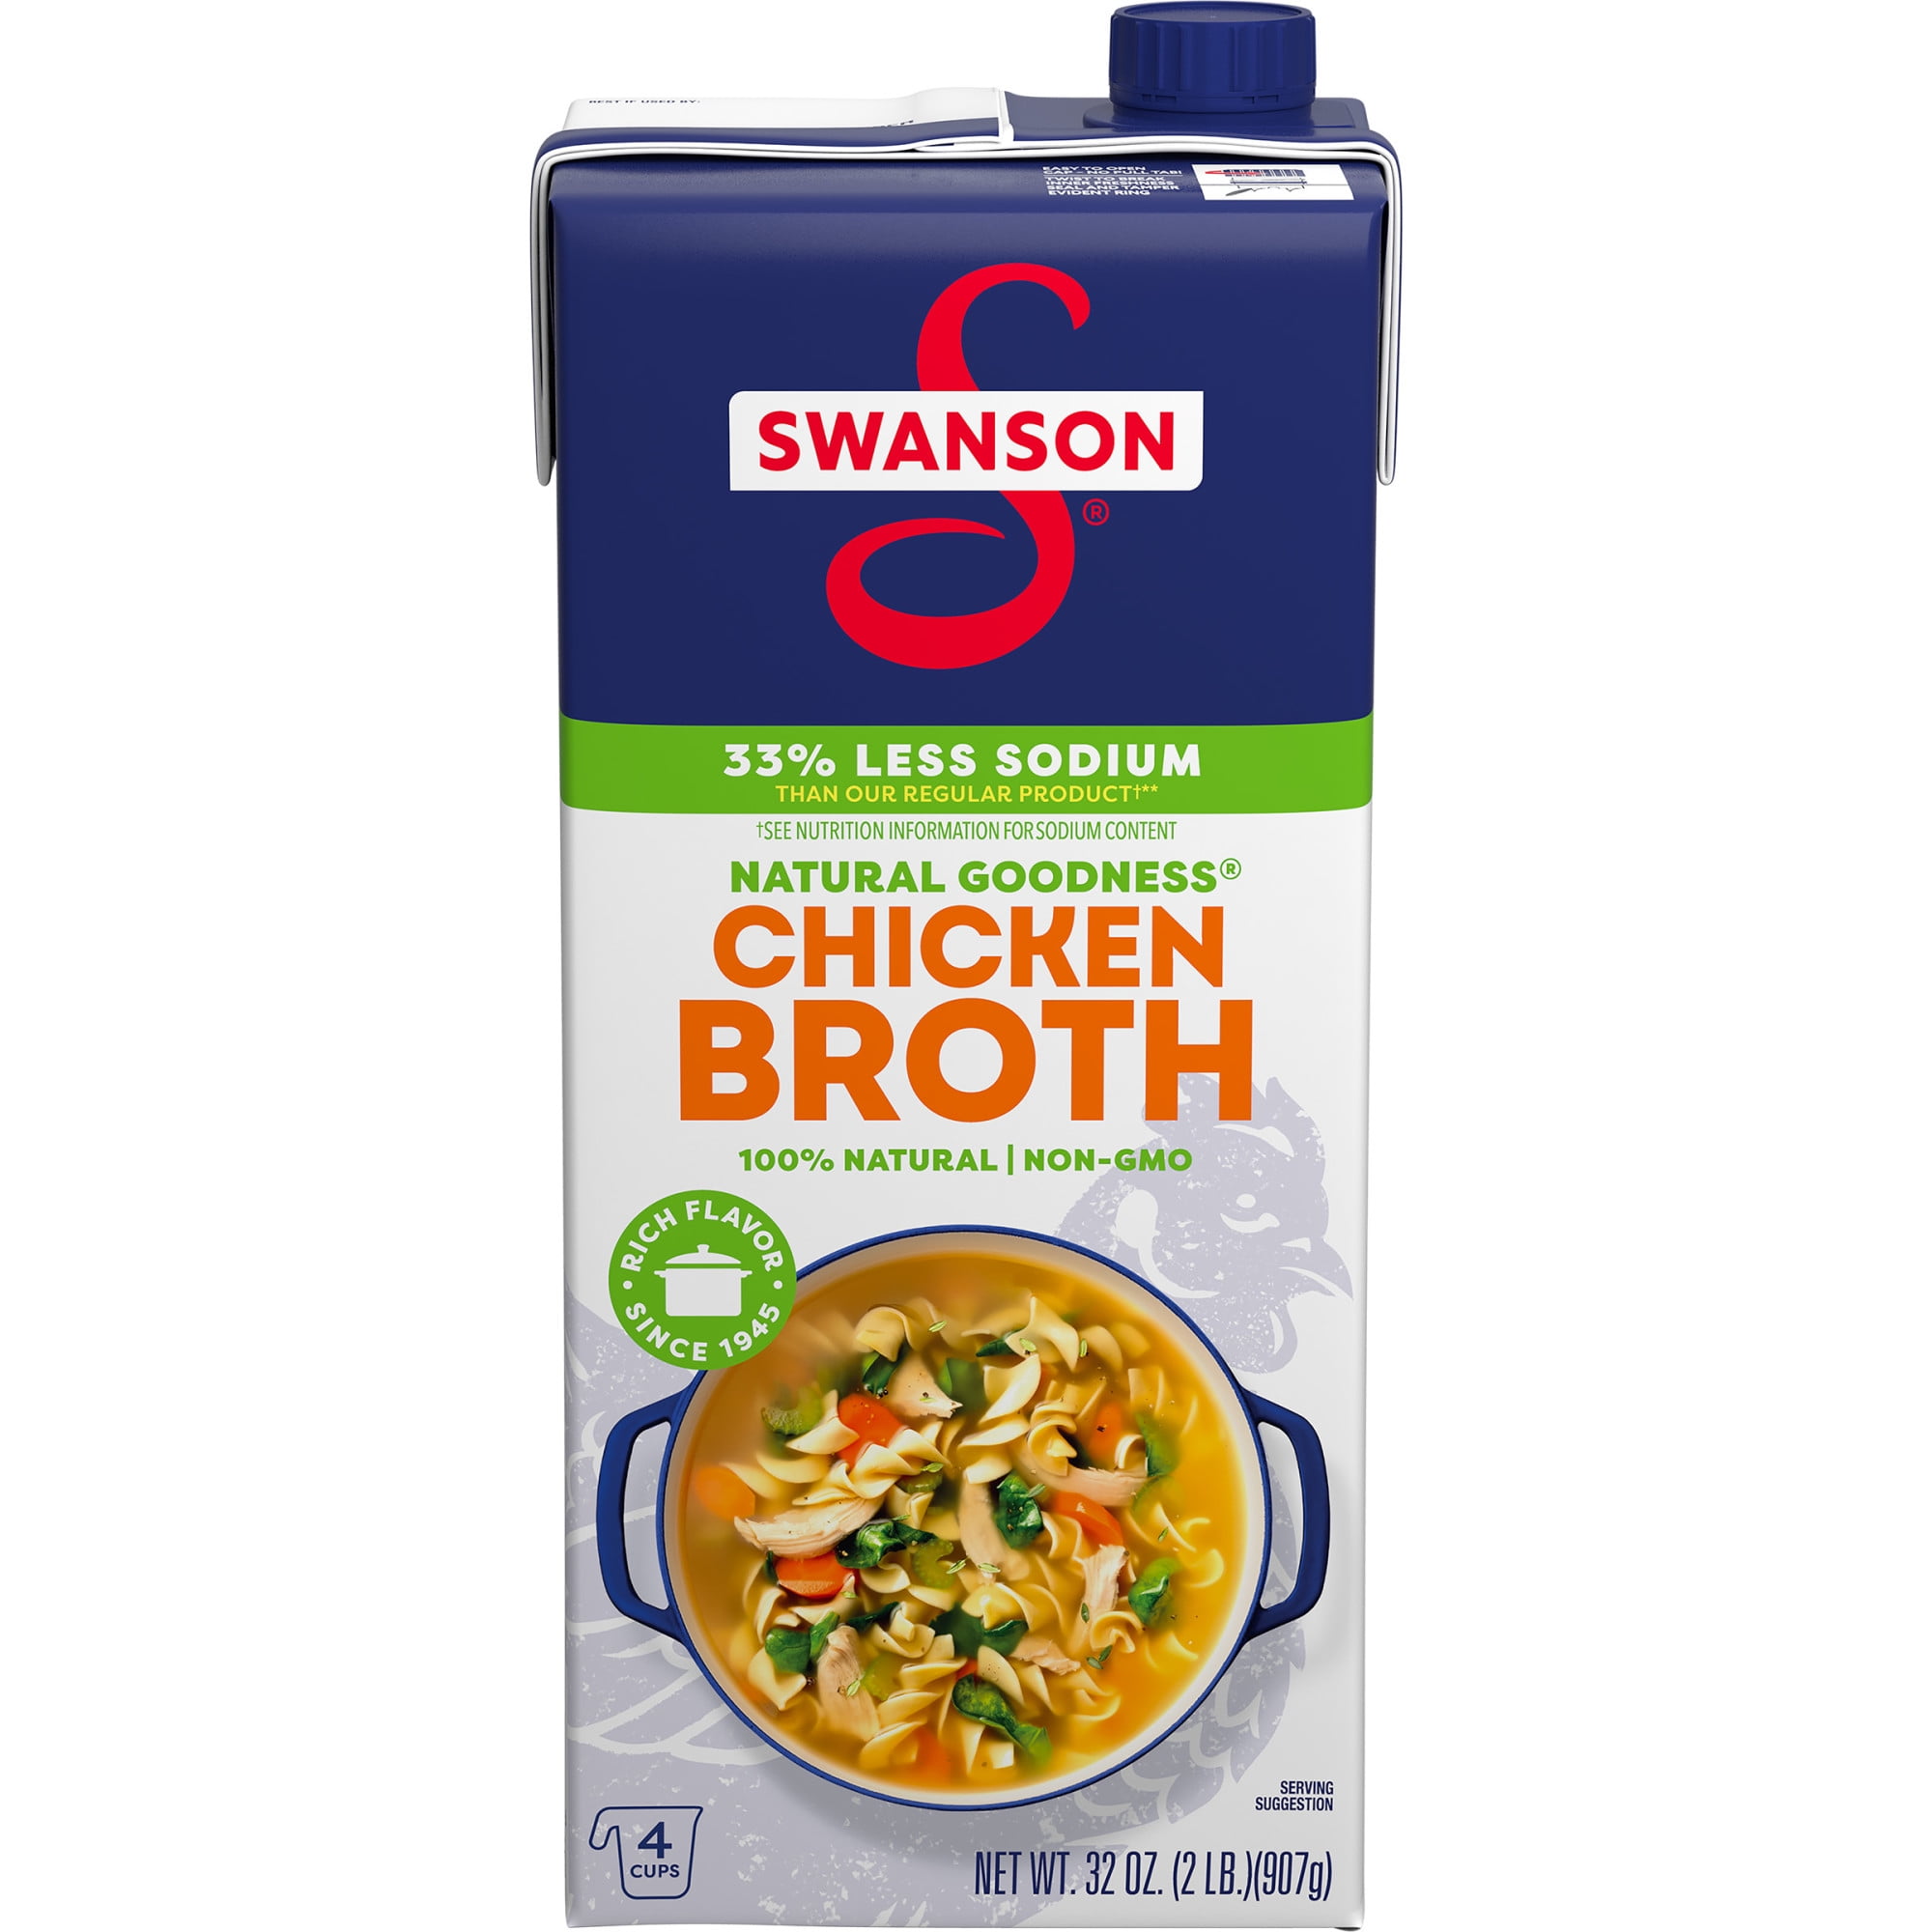 .com: Whole Foods Market, Nana's Chicken Noodle Soup, 24